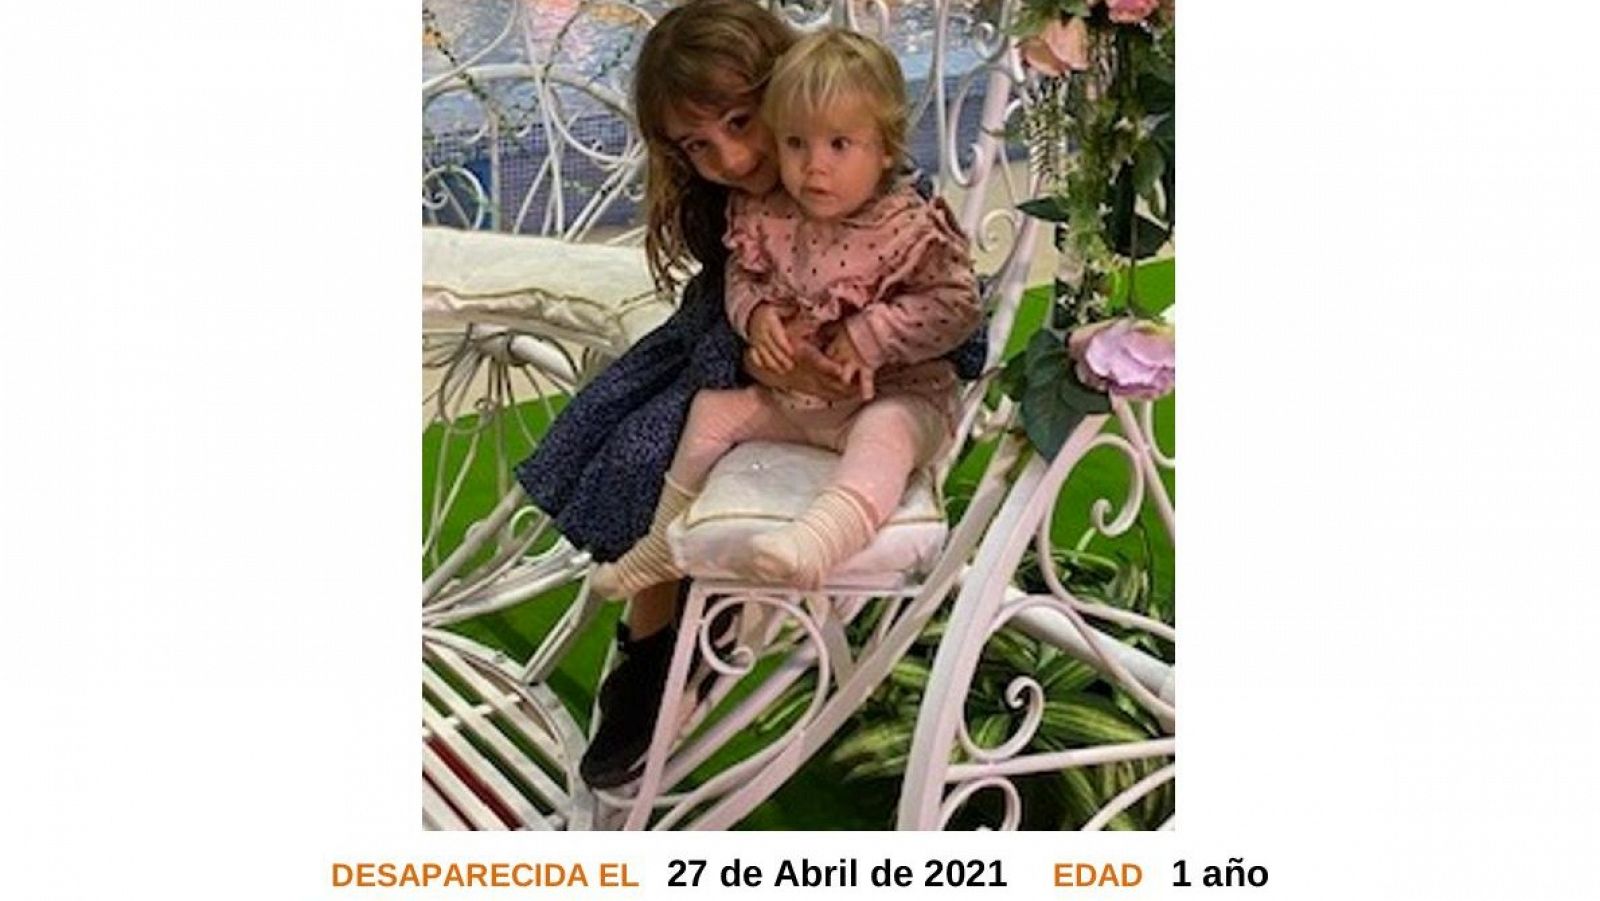 Desaparecidas dos niñas de 1 y 6 años en Tenerife